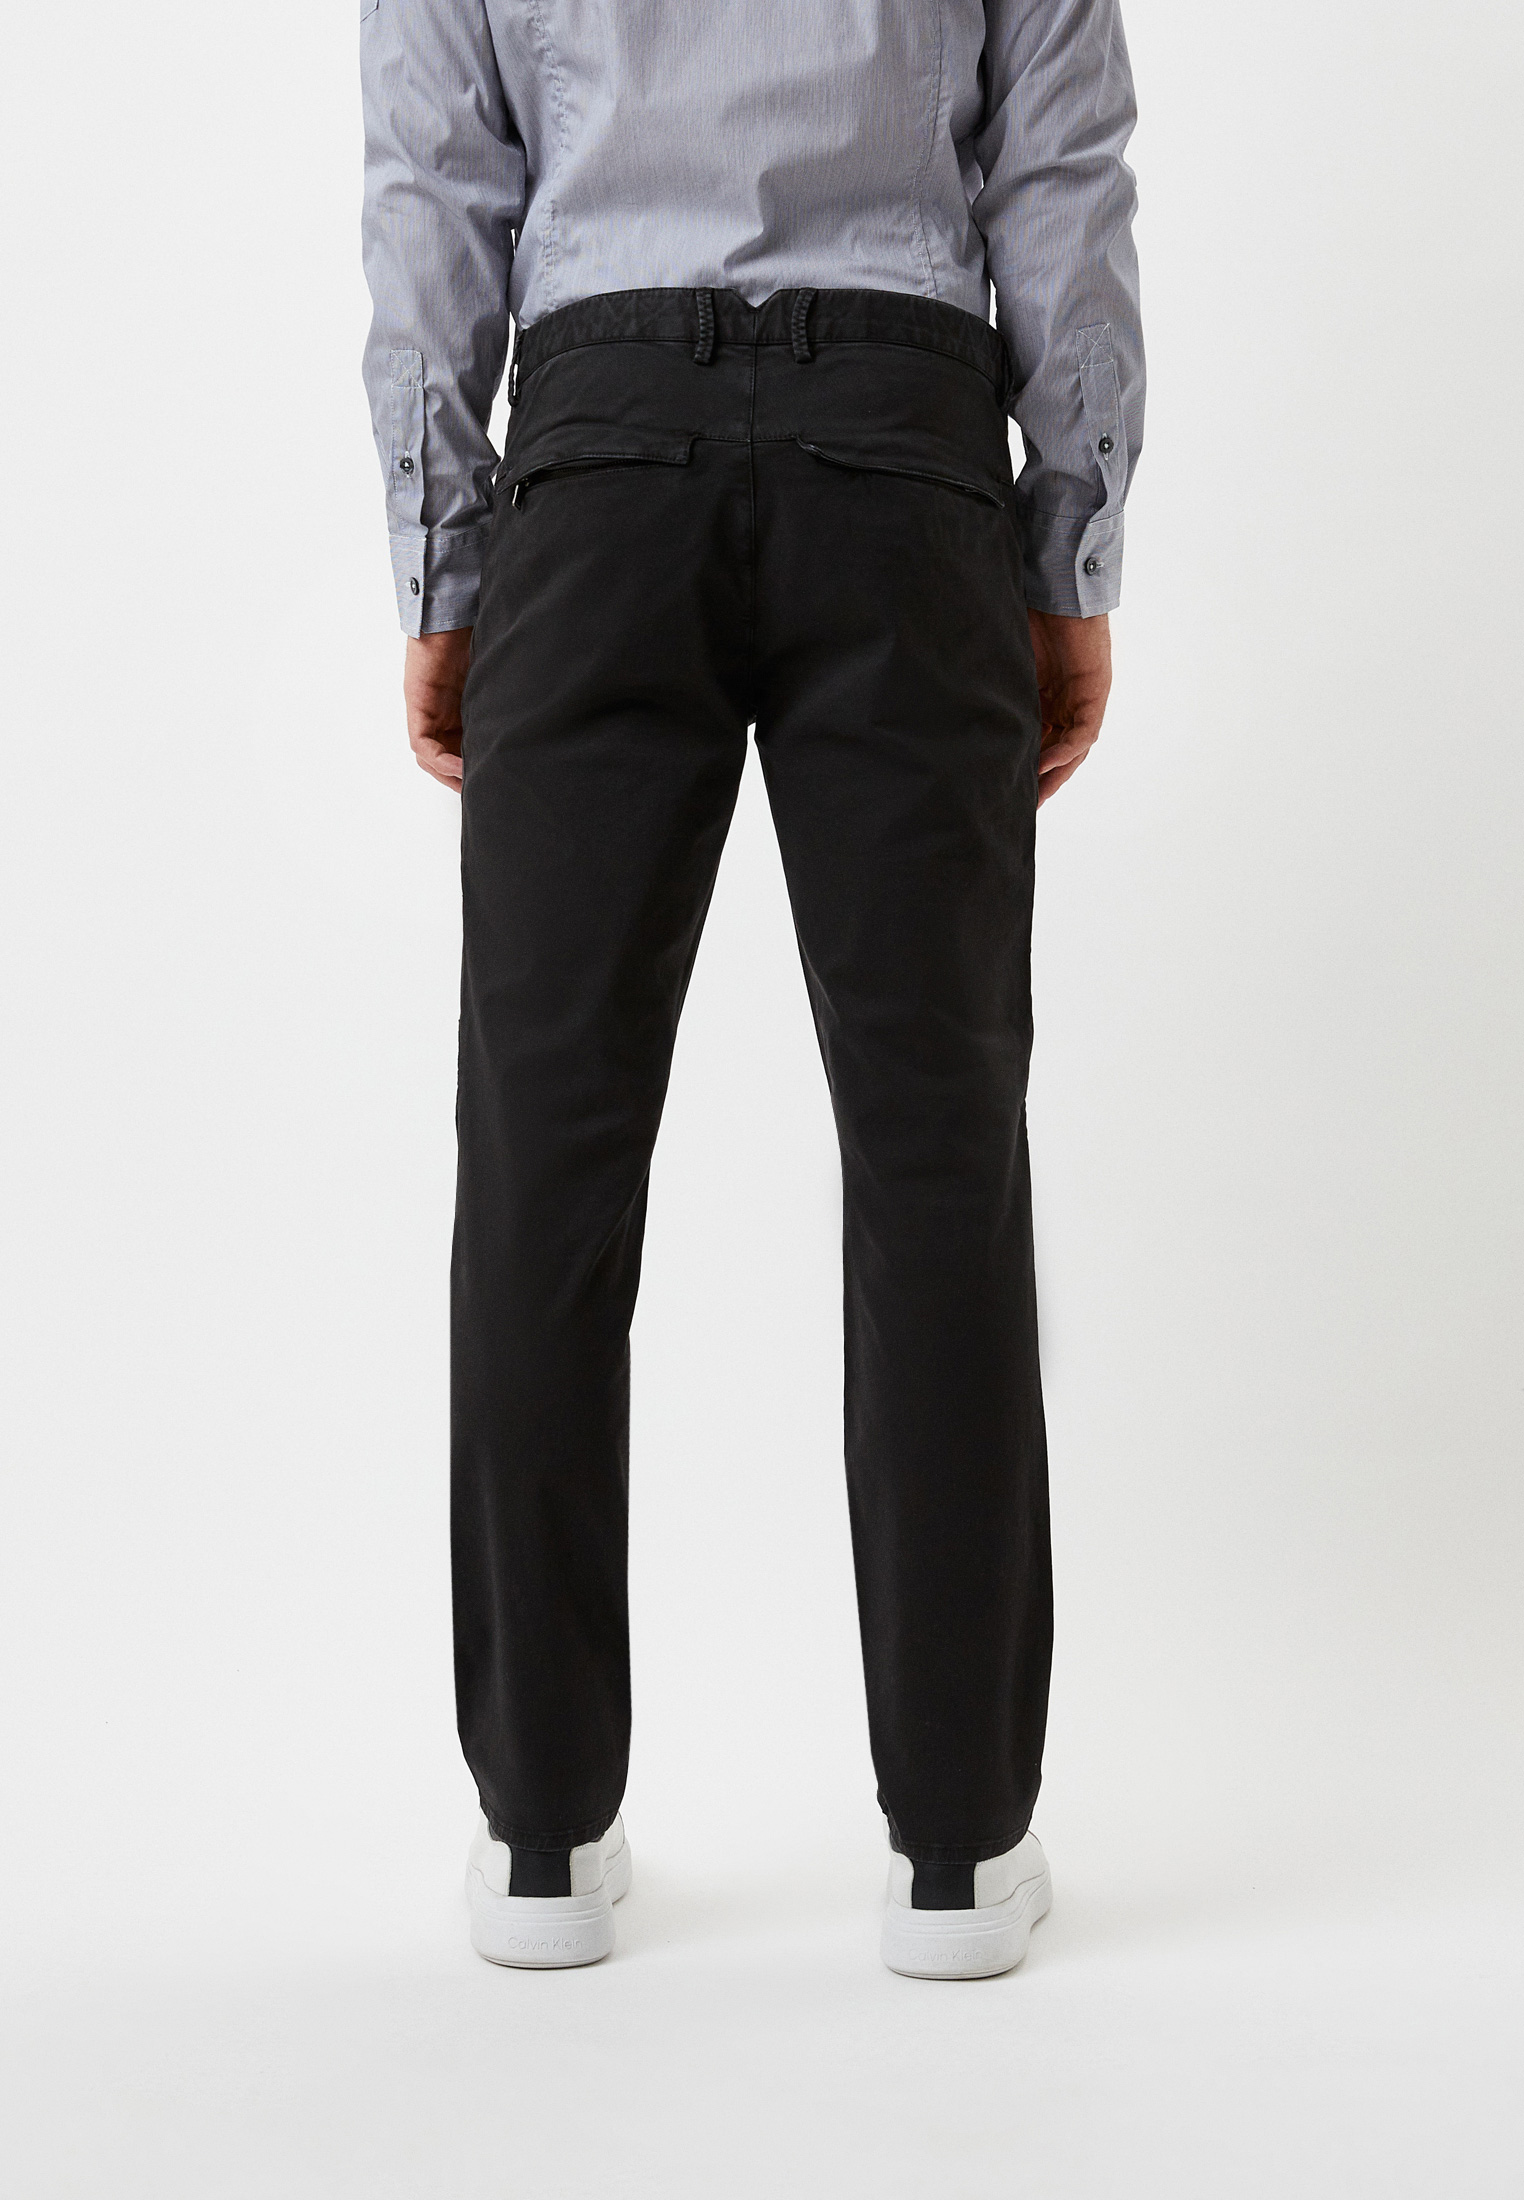 Мужские повседневные брюки Bikkembergs (Биккембергс) CP51BGJSB134: изображение 7